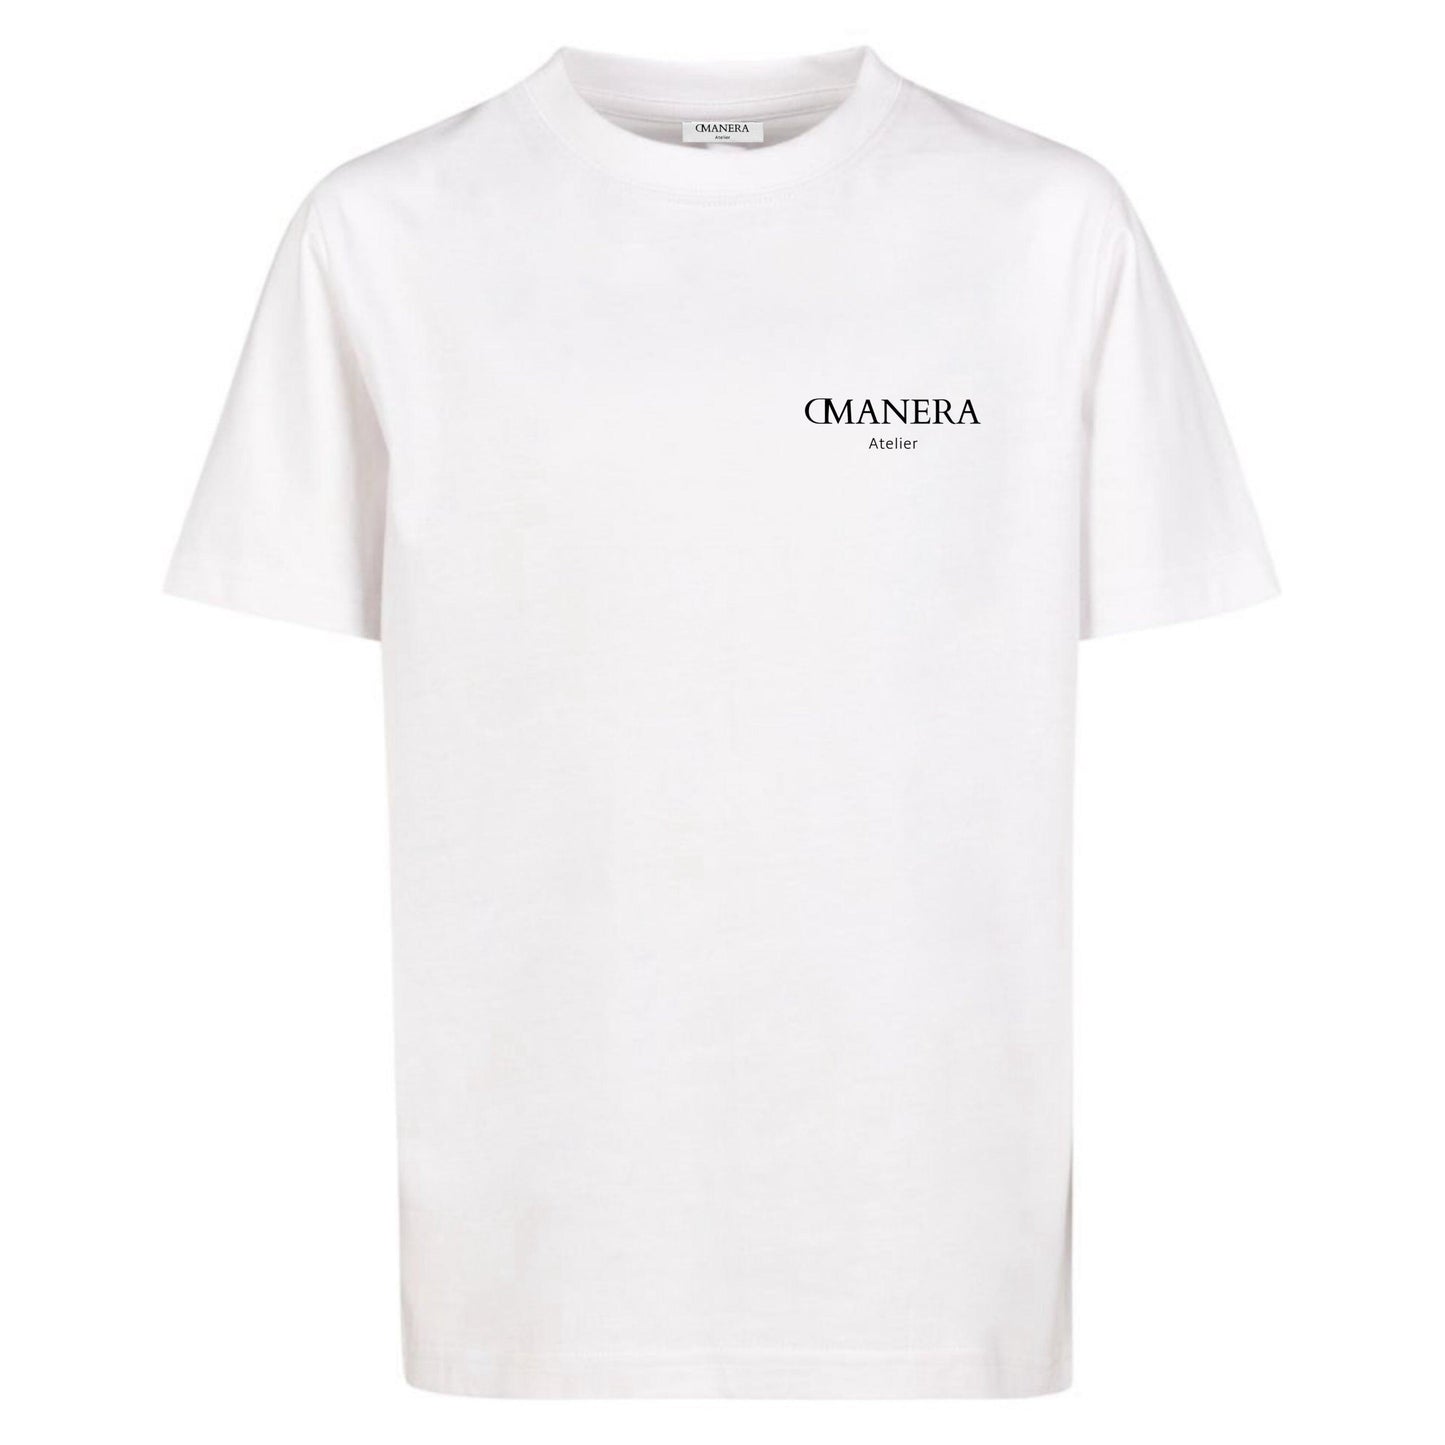 Oversize Shirt White/Black 240 g/m² - DMANERA Atelier